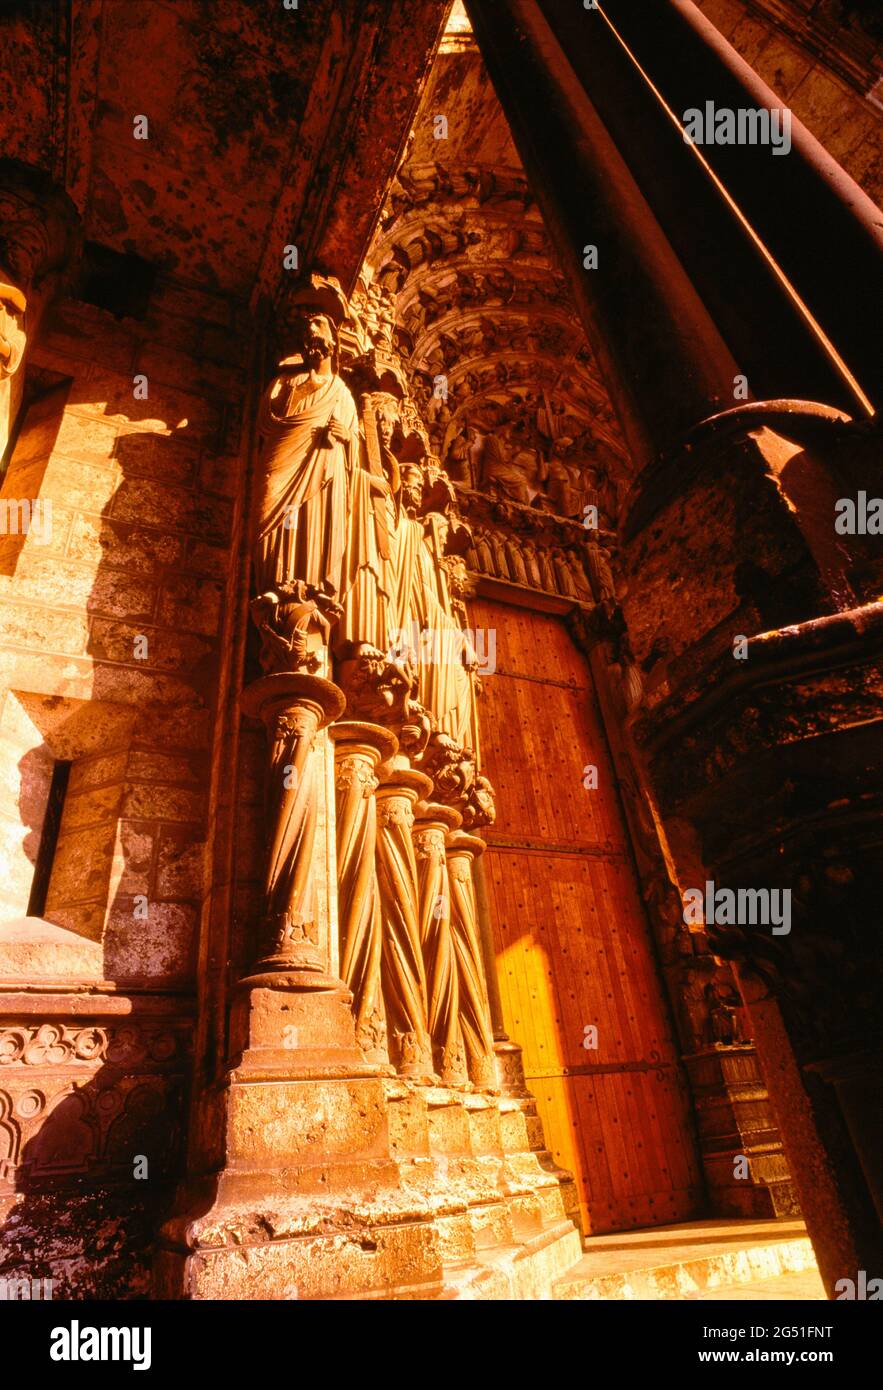 Vue à angle bas sur les sculptures de la cathédrale de Chartres, Chartres, France Banque D'Images